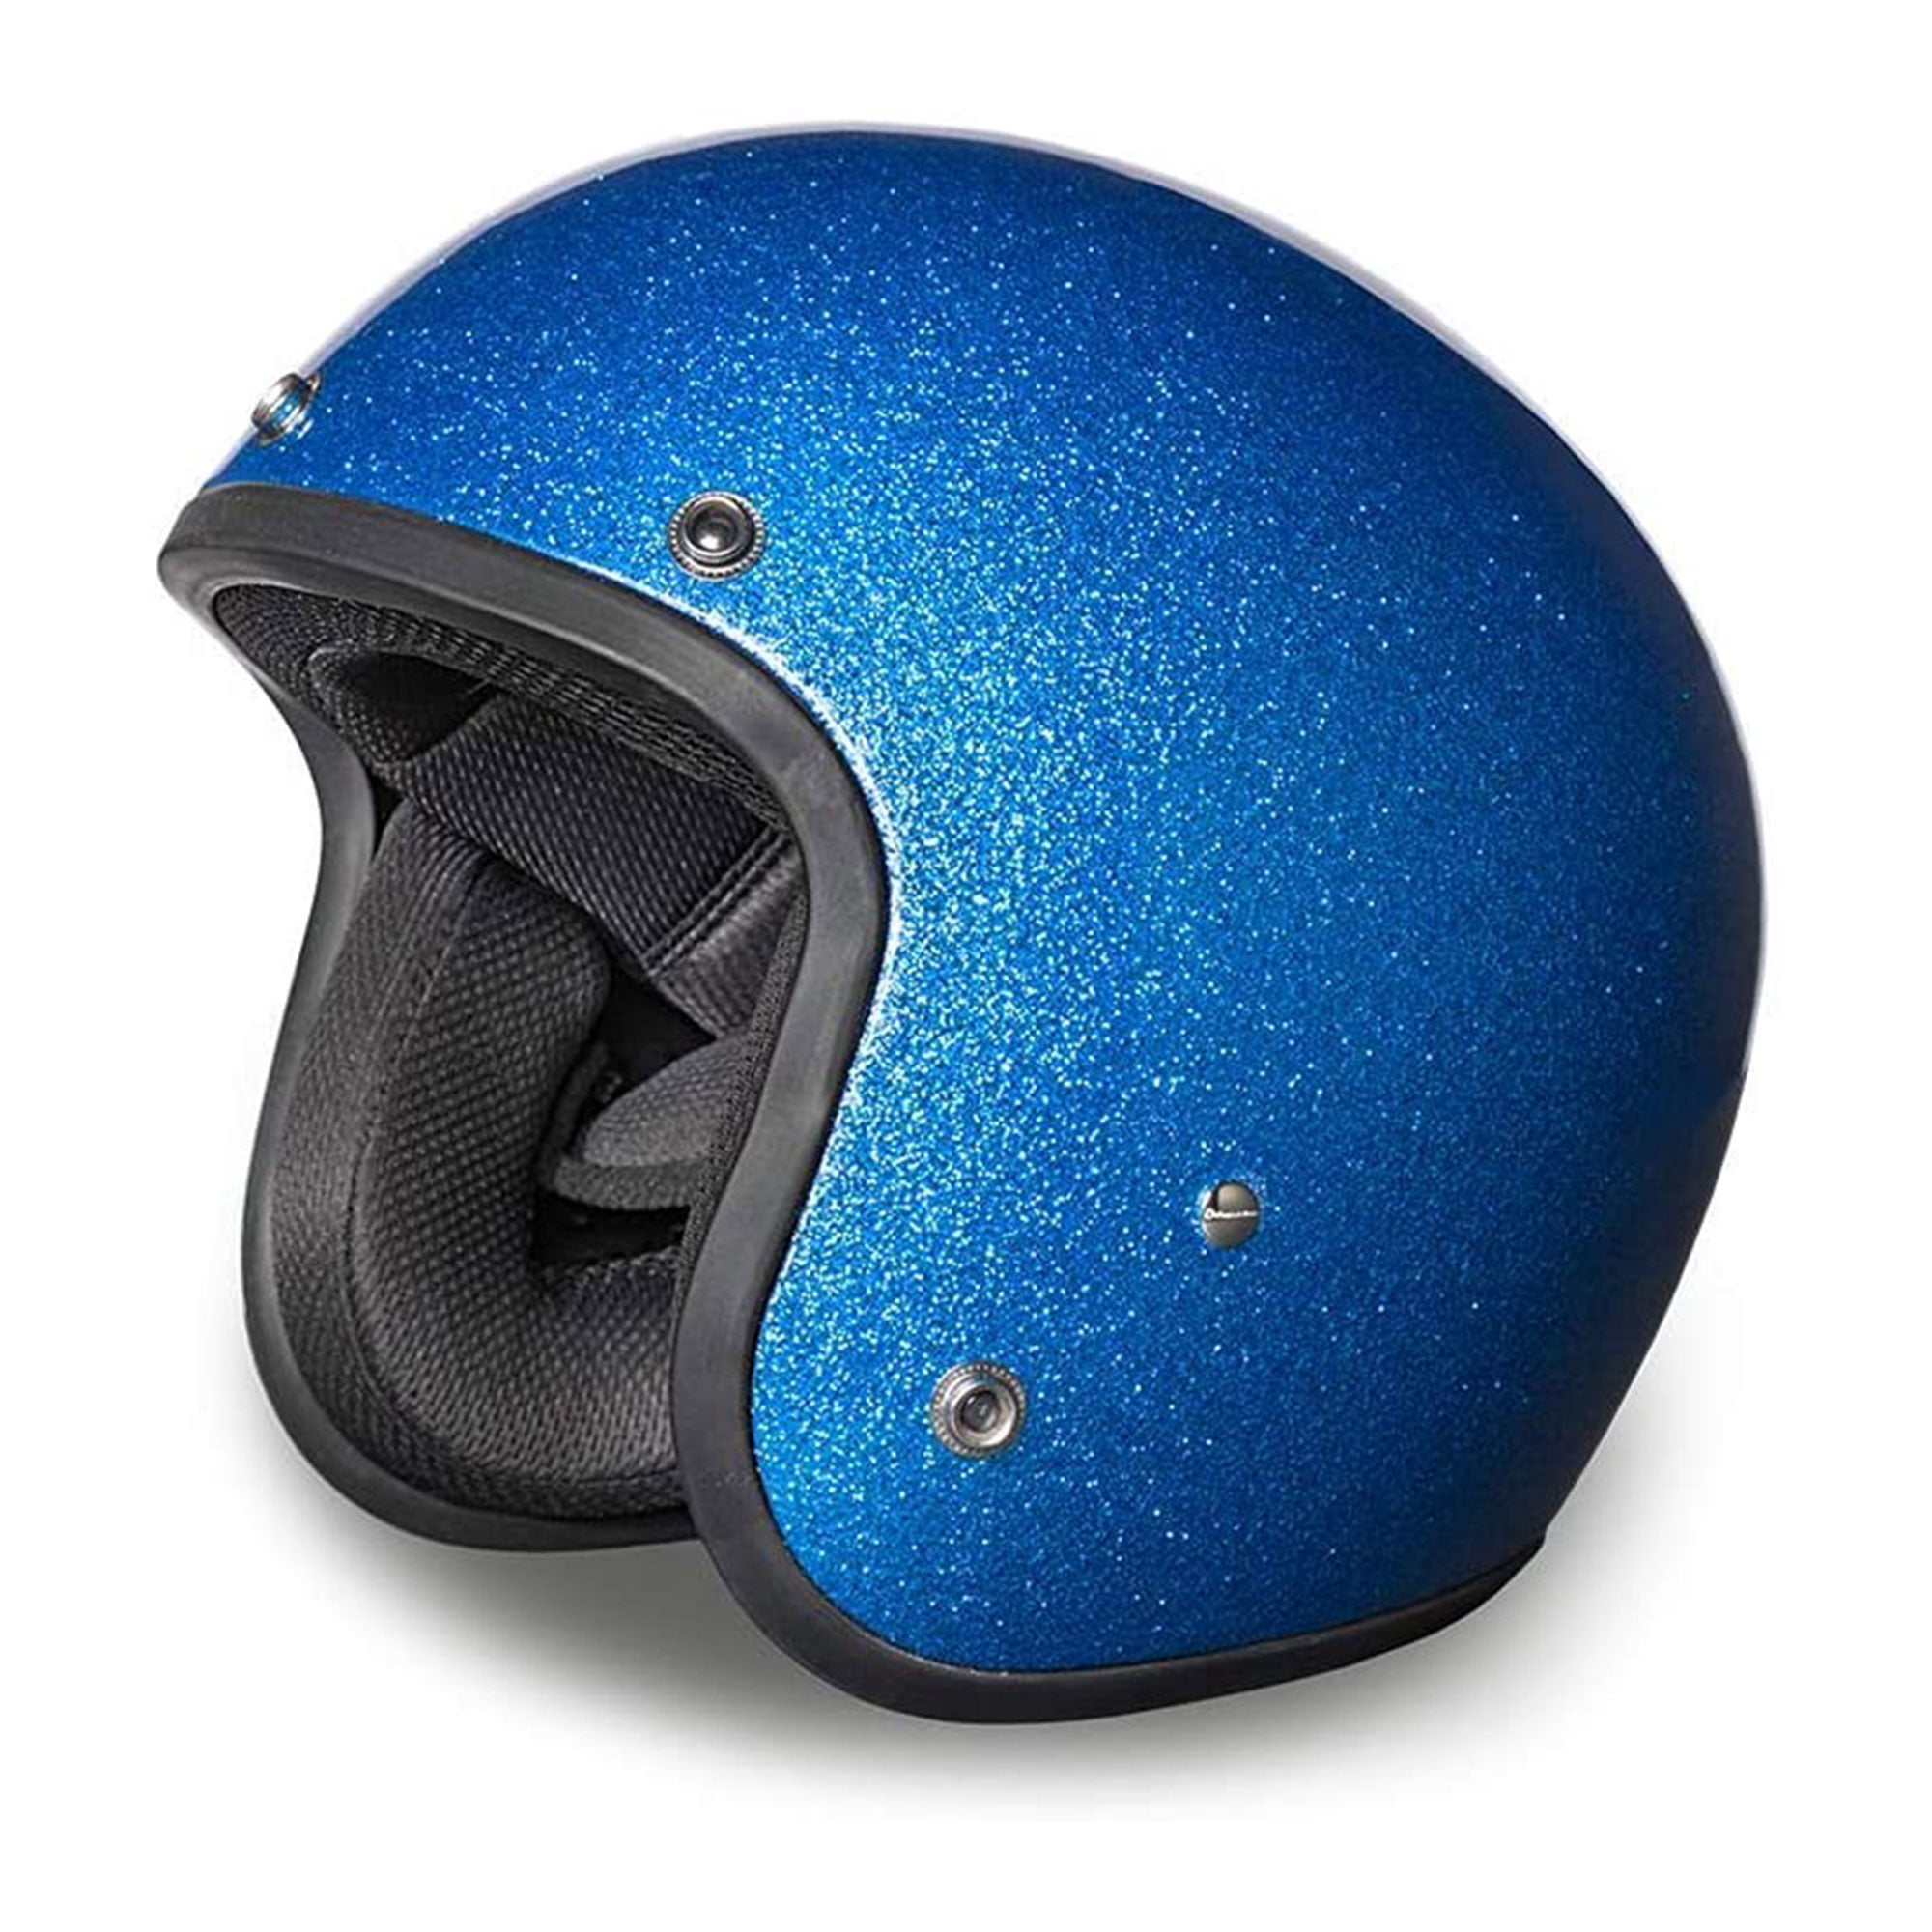 並行輸入品 Daytona Helmets 3 4 Shell Open Face Motorcycle Helmet X13 Dot Approved Blue Sxcmpldrpy 車 バイク 自転車 Www Elghoniemy Com